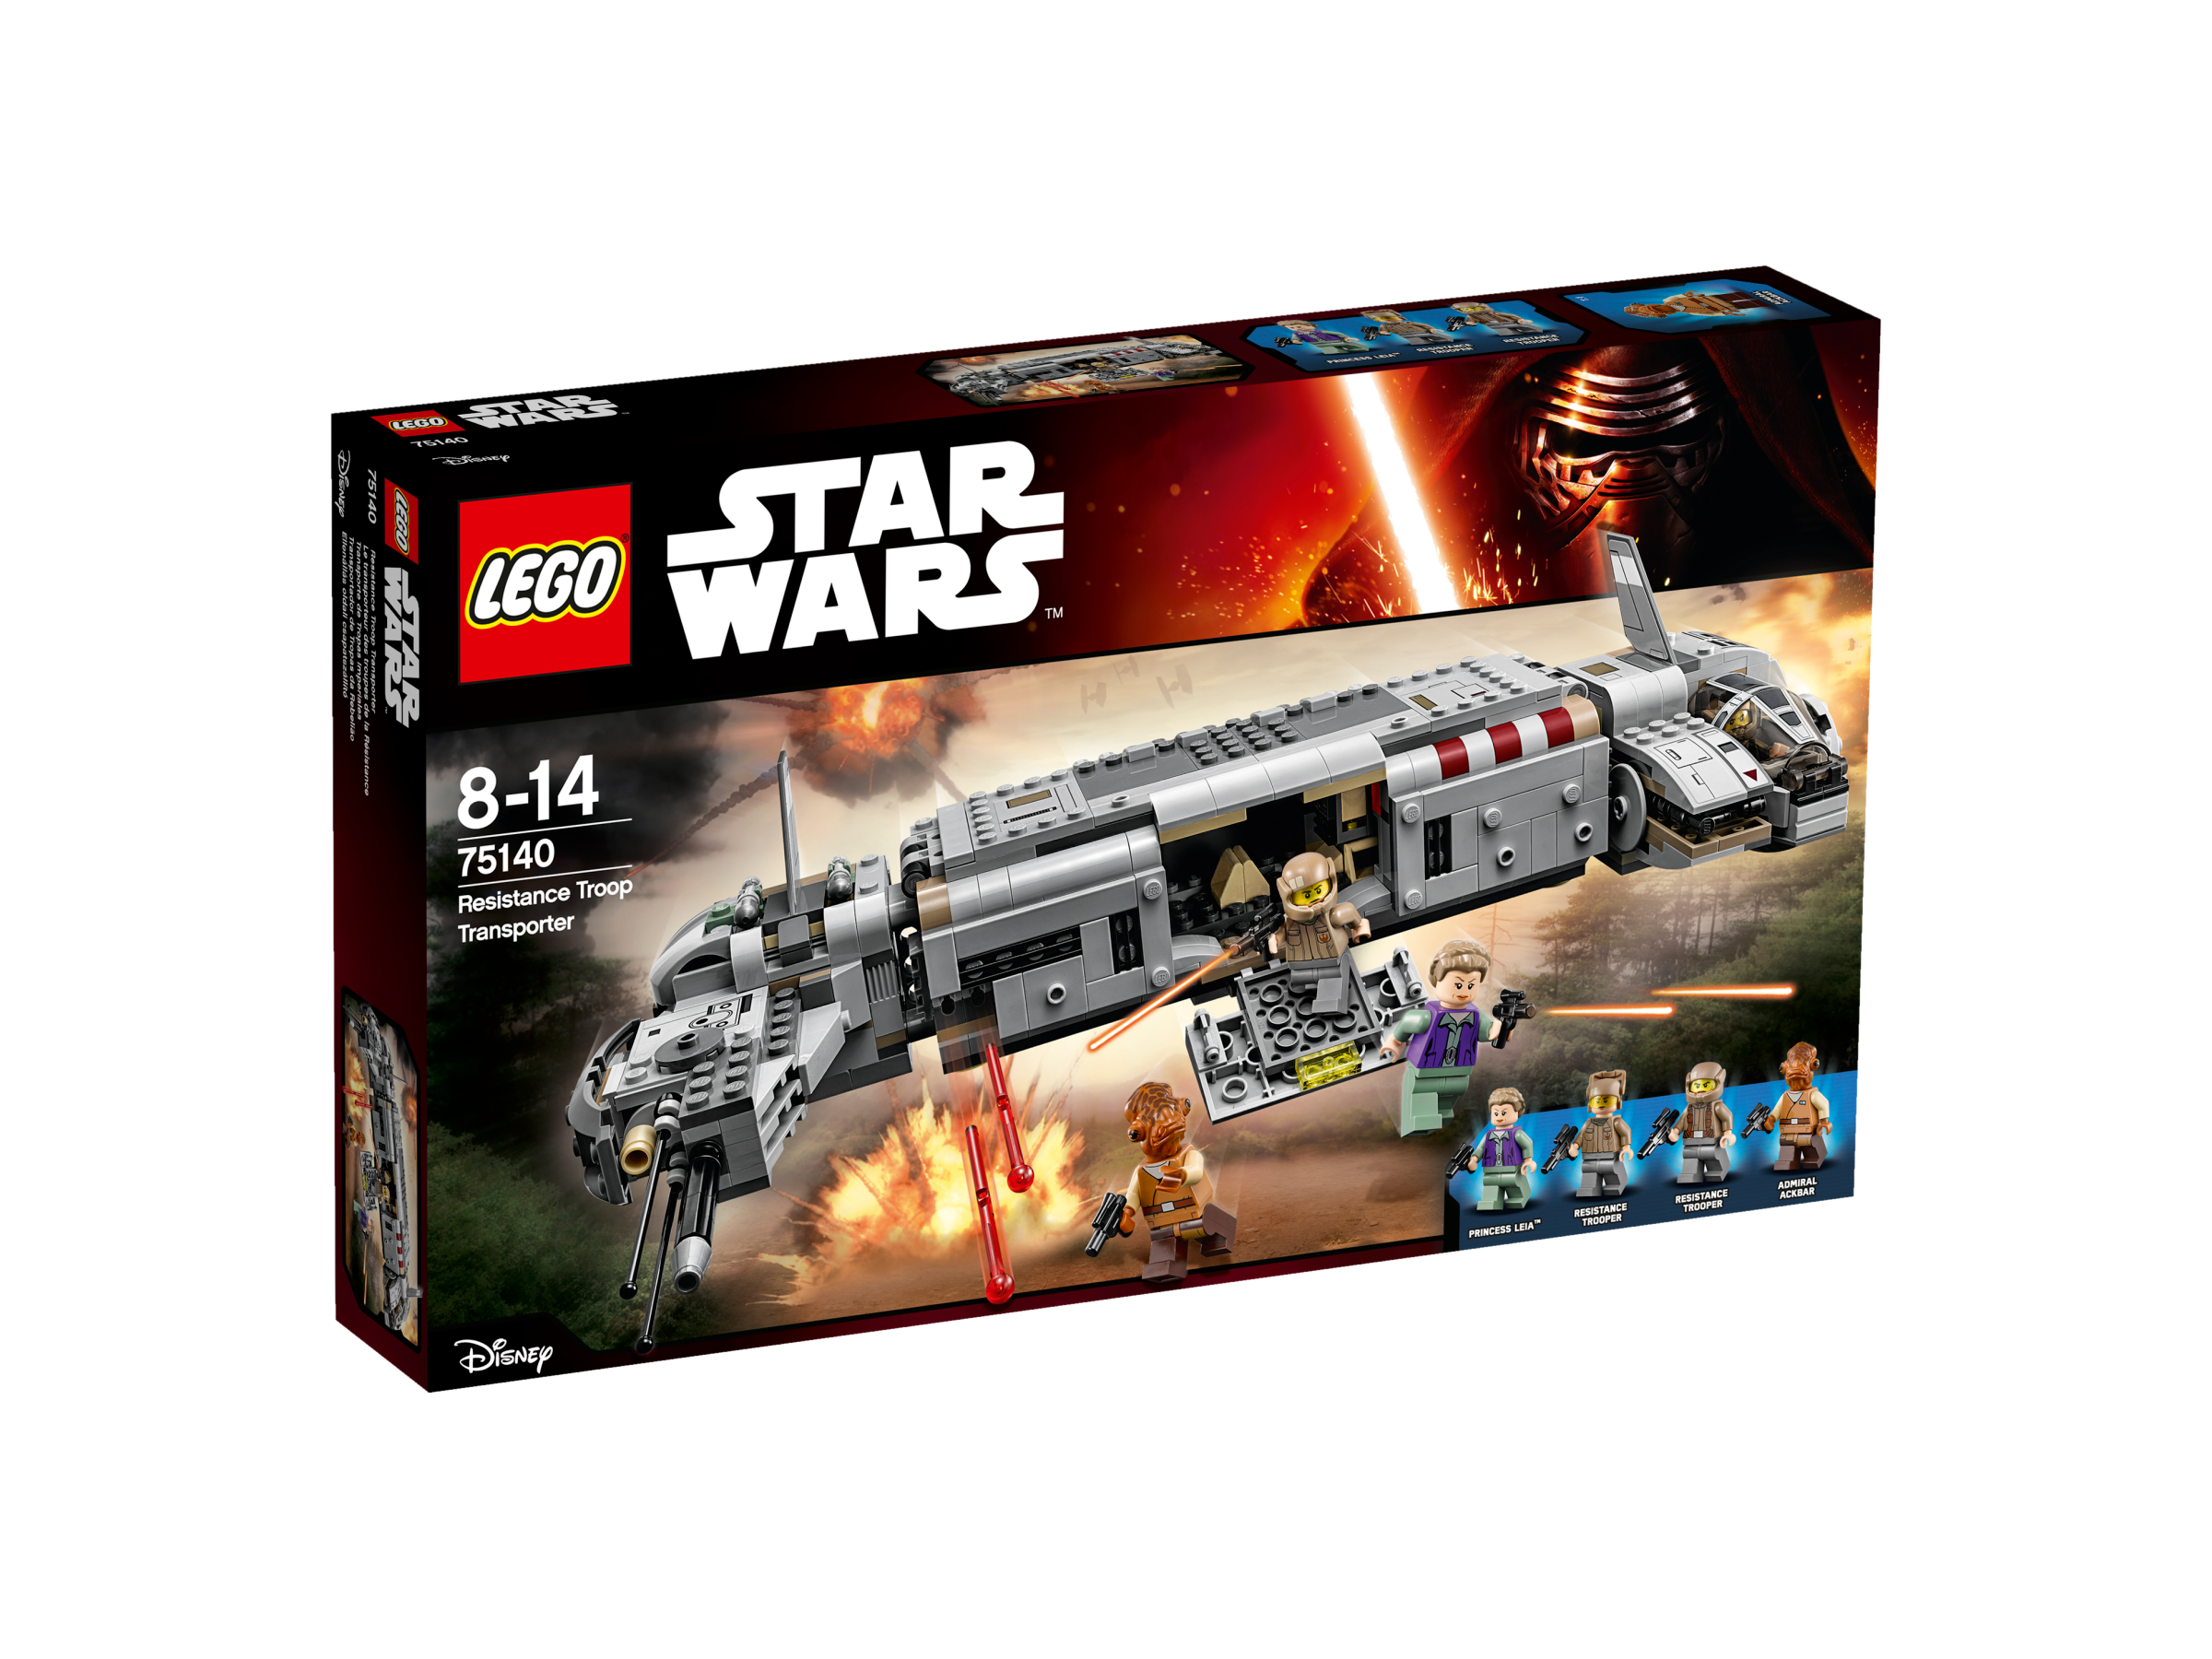 lego Star Wars Resistance Troop Transporter